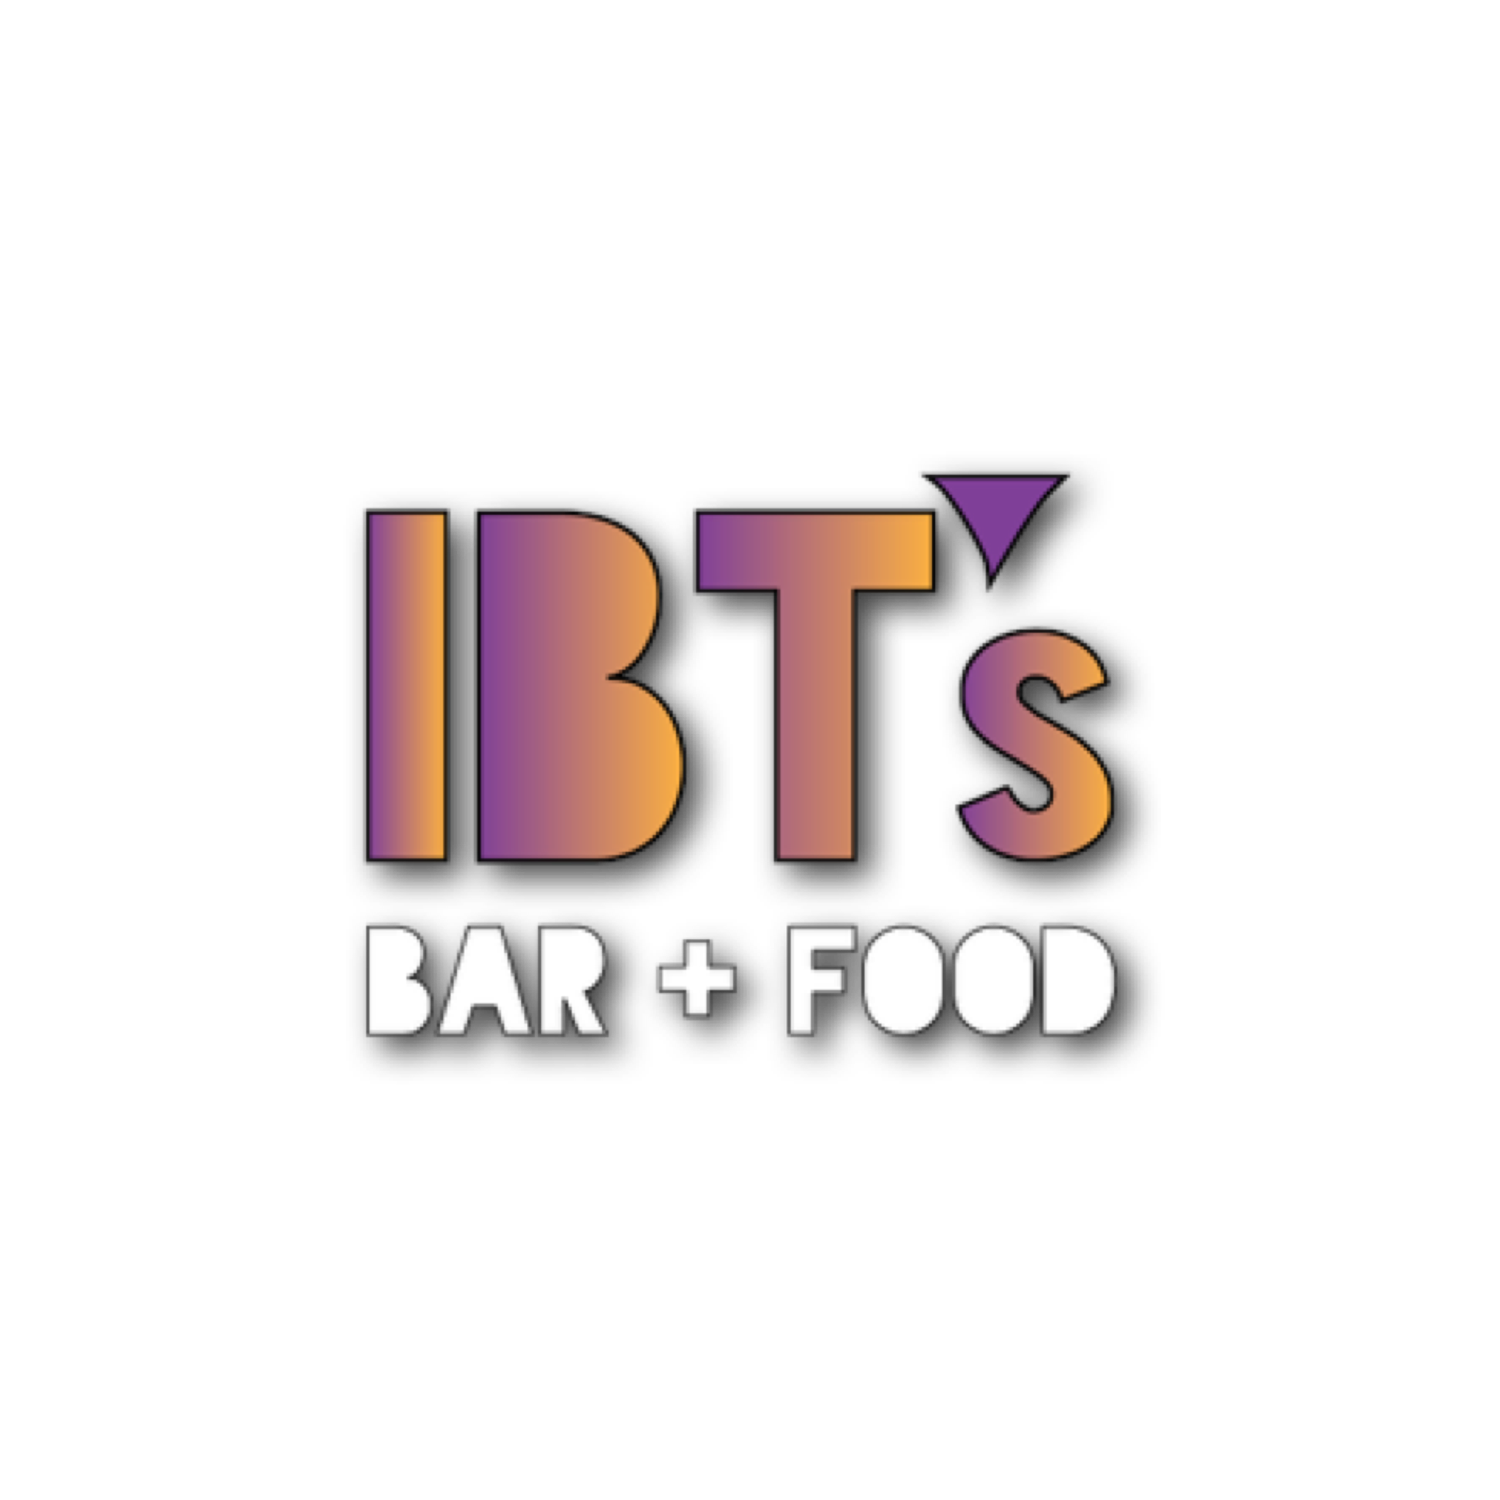 IBT's Bar + Food